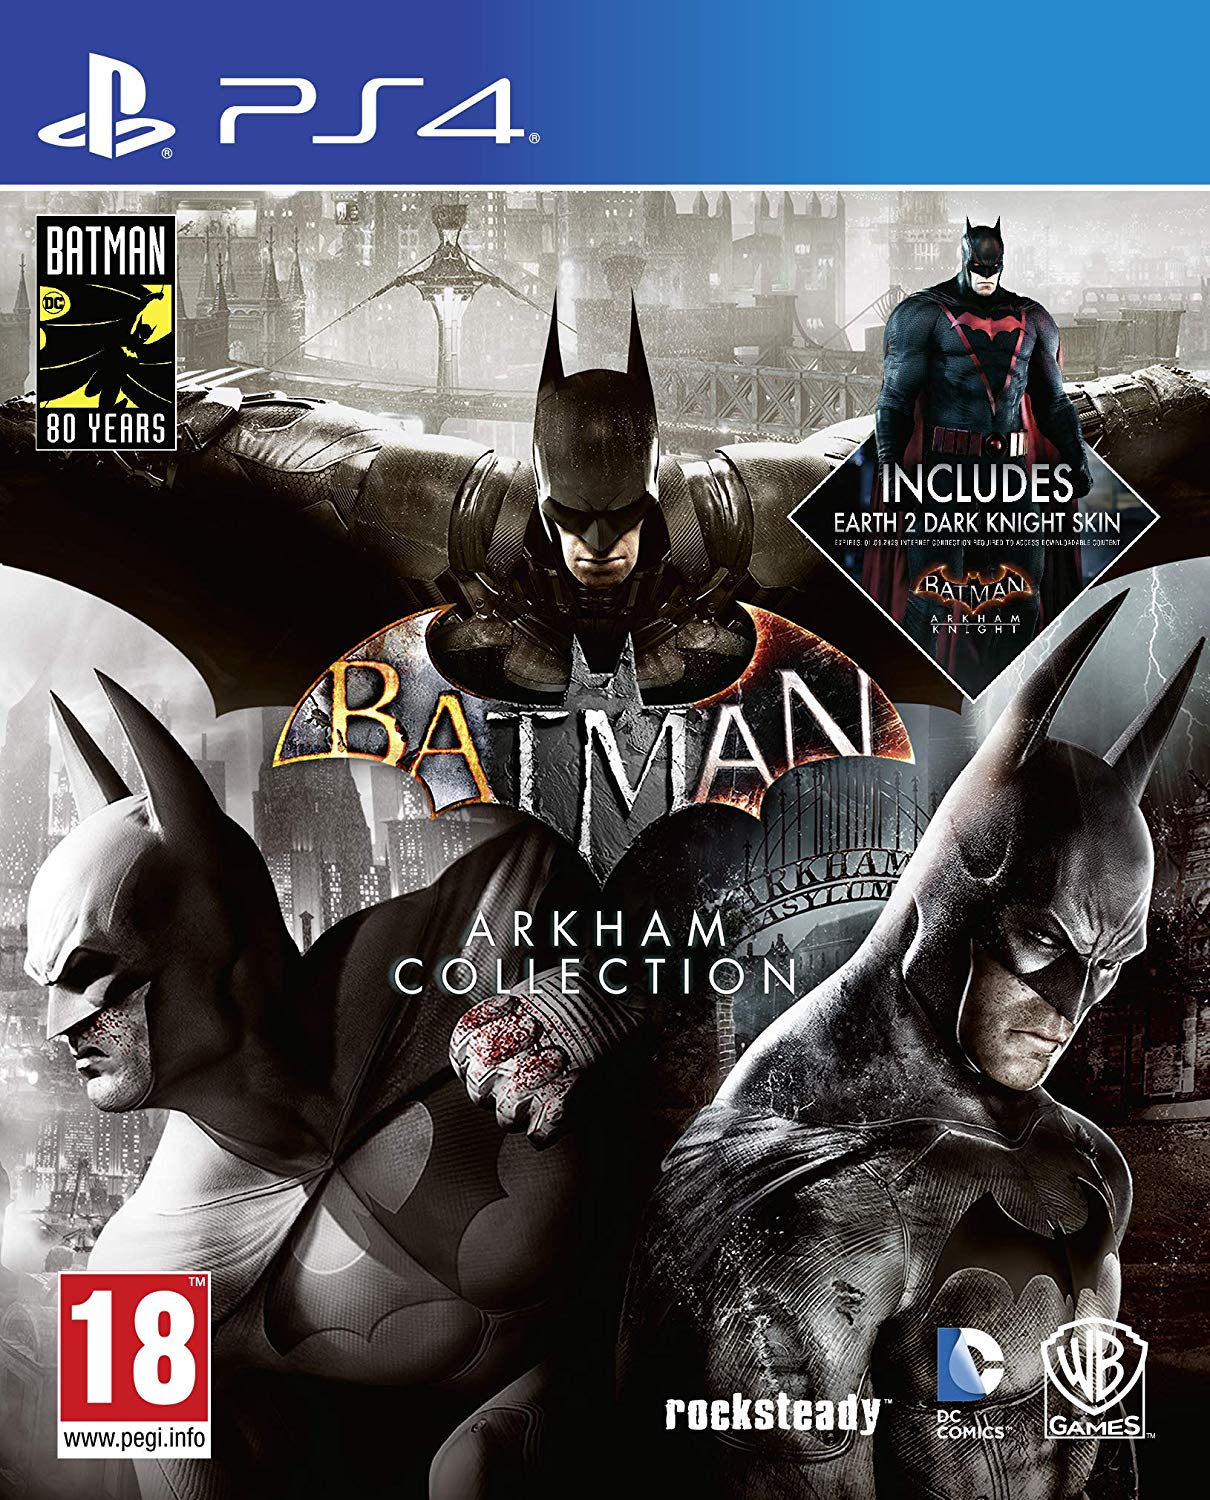 742 - Batman Arkham Collection